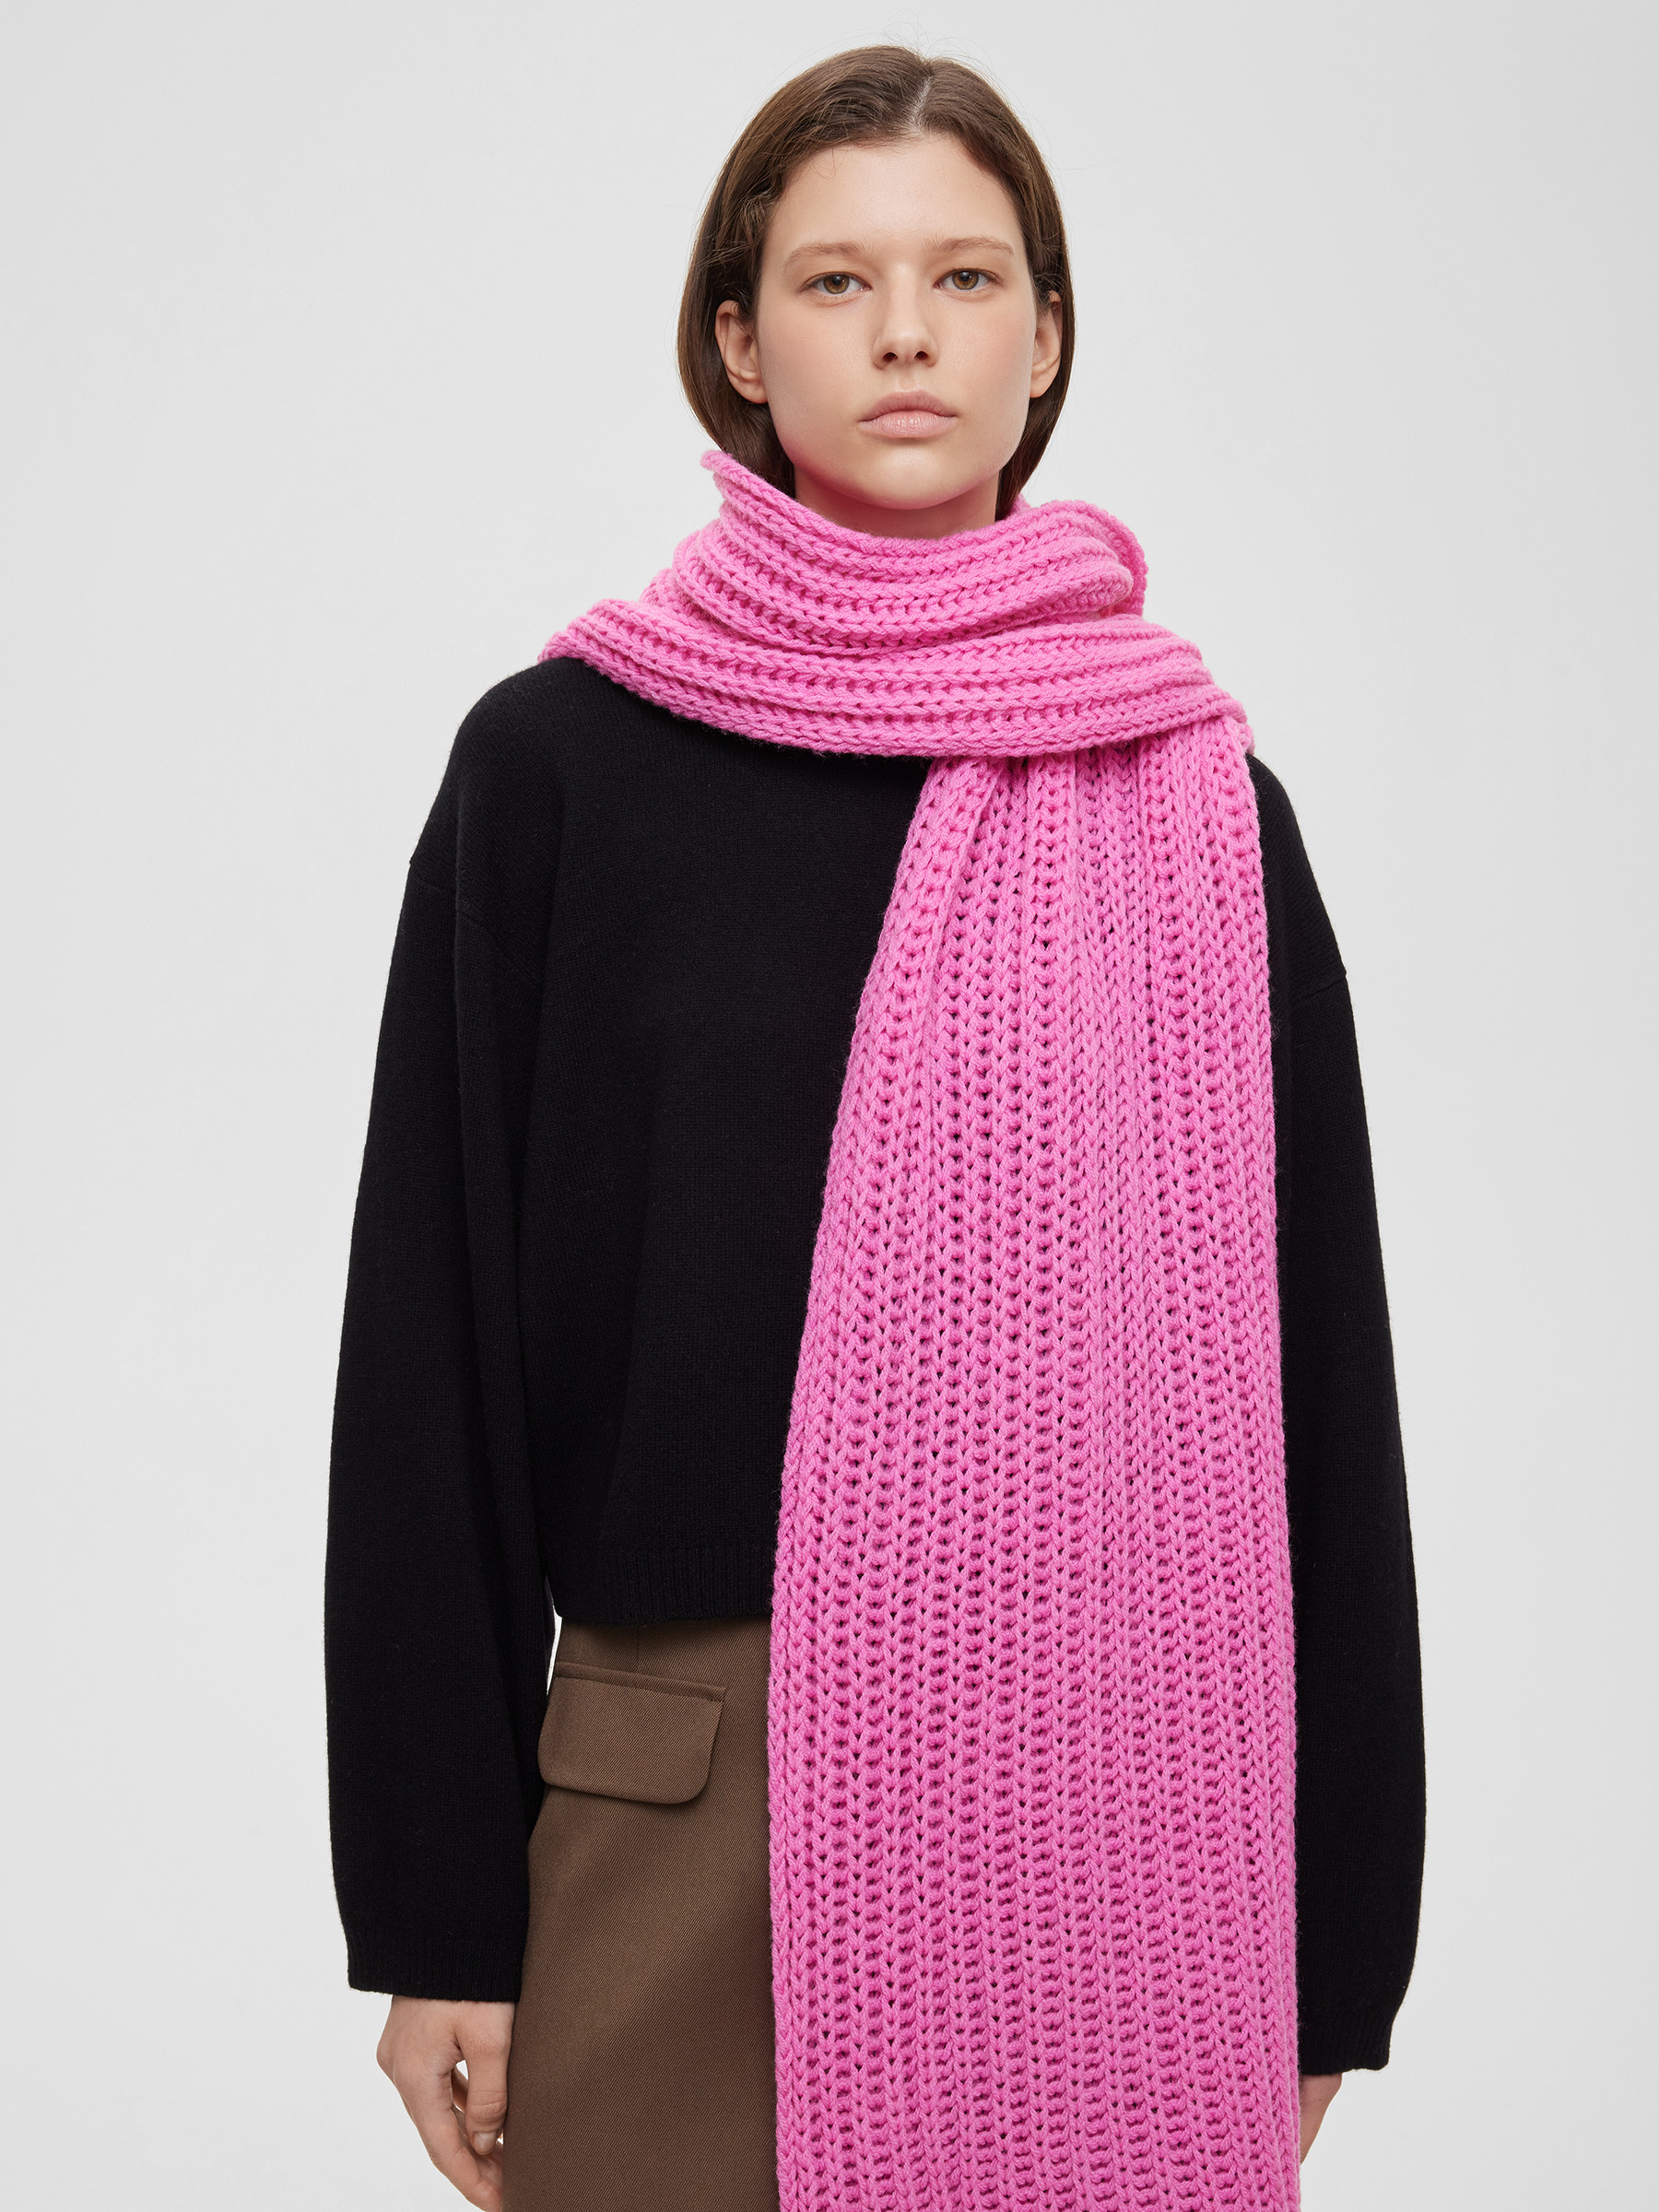 Шарф легкий крупной вязки, цвет – розовая фуксия шарф крупной вязки цвет – бежевый